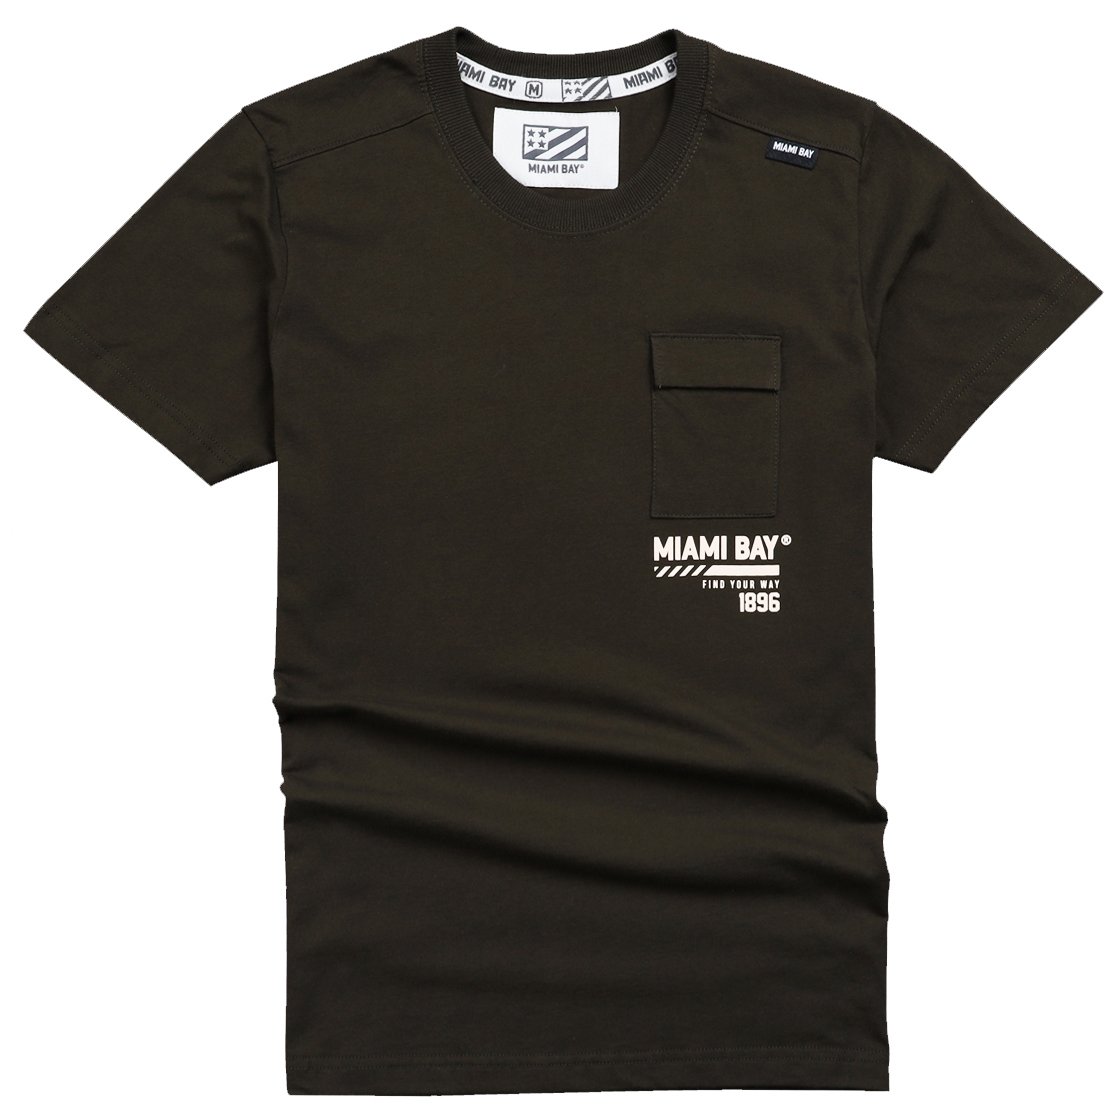 Miamibay T-shirt เสื้อยืด รุ่น Keep 1896 (ผู้ชาย) แฟชั่น คอกลม ลายสกรีน ผ้าฝ้าย cotton ฟอกนุ่ม ไซส์ S M L XL